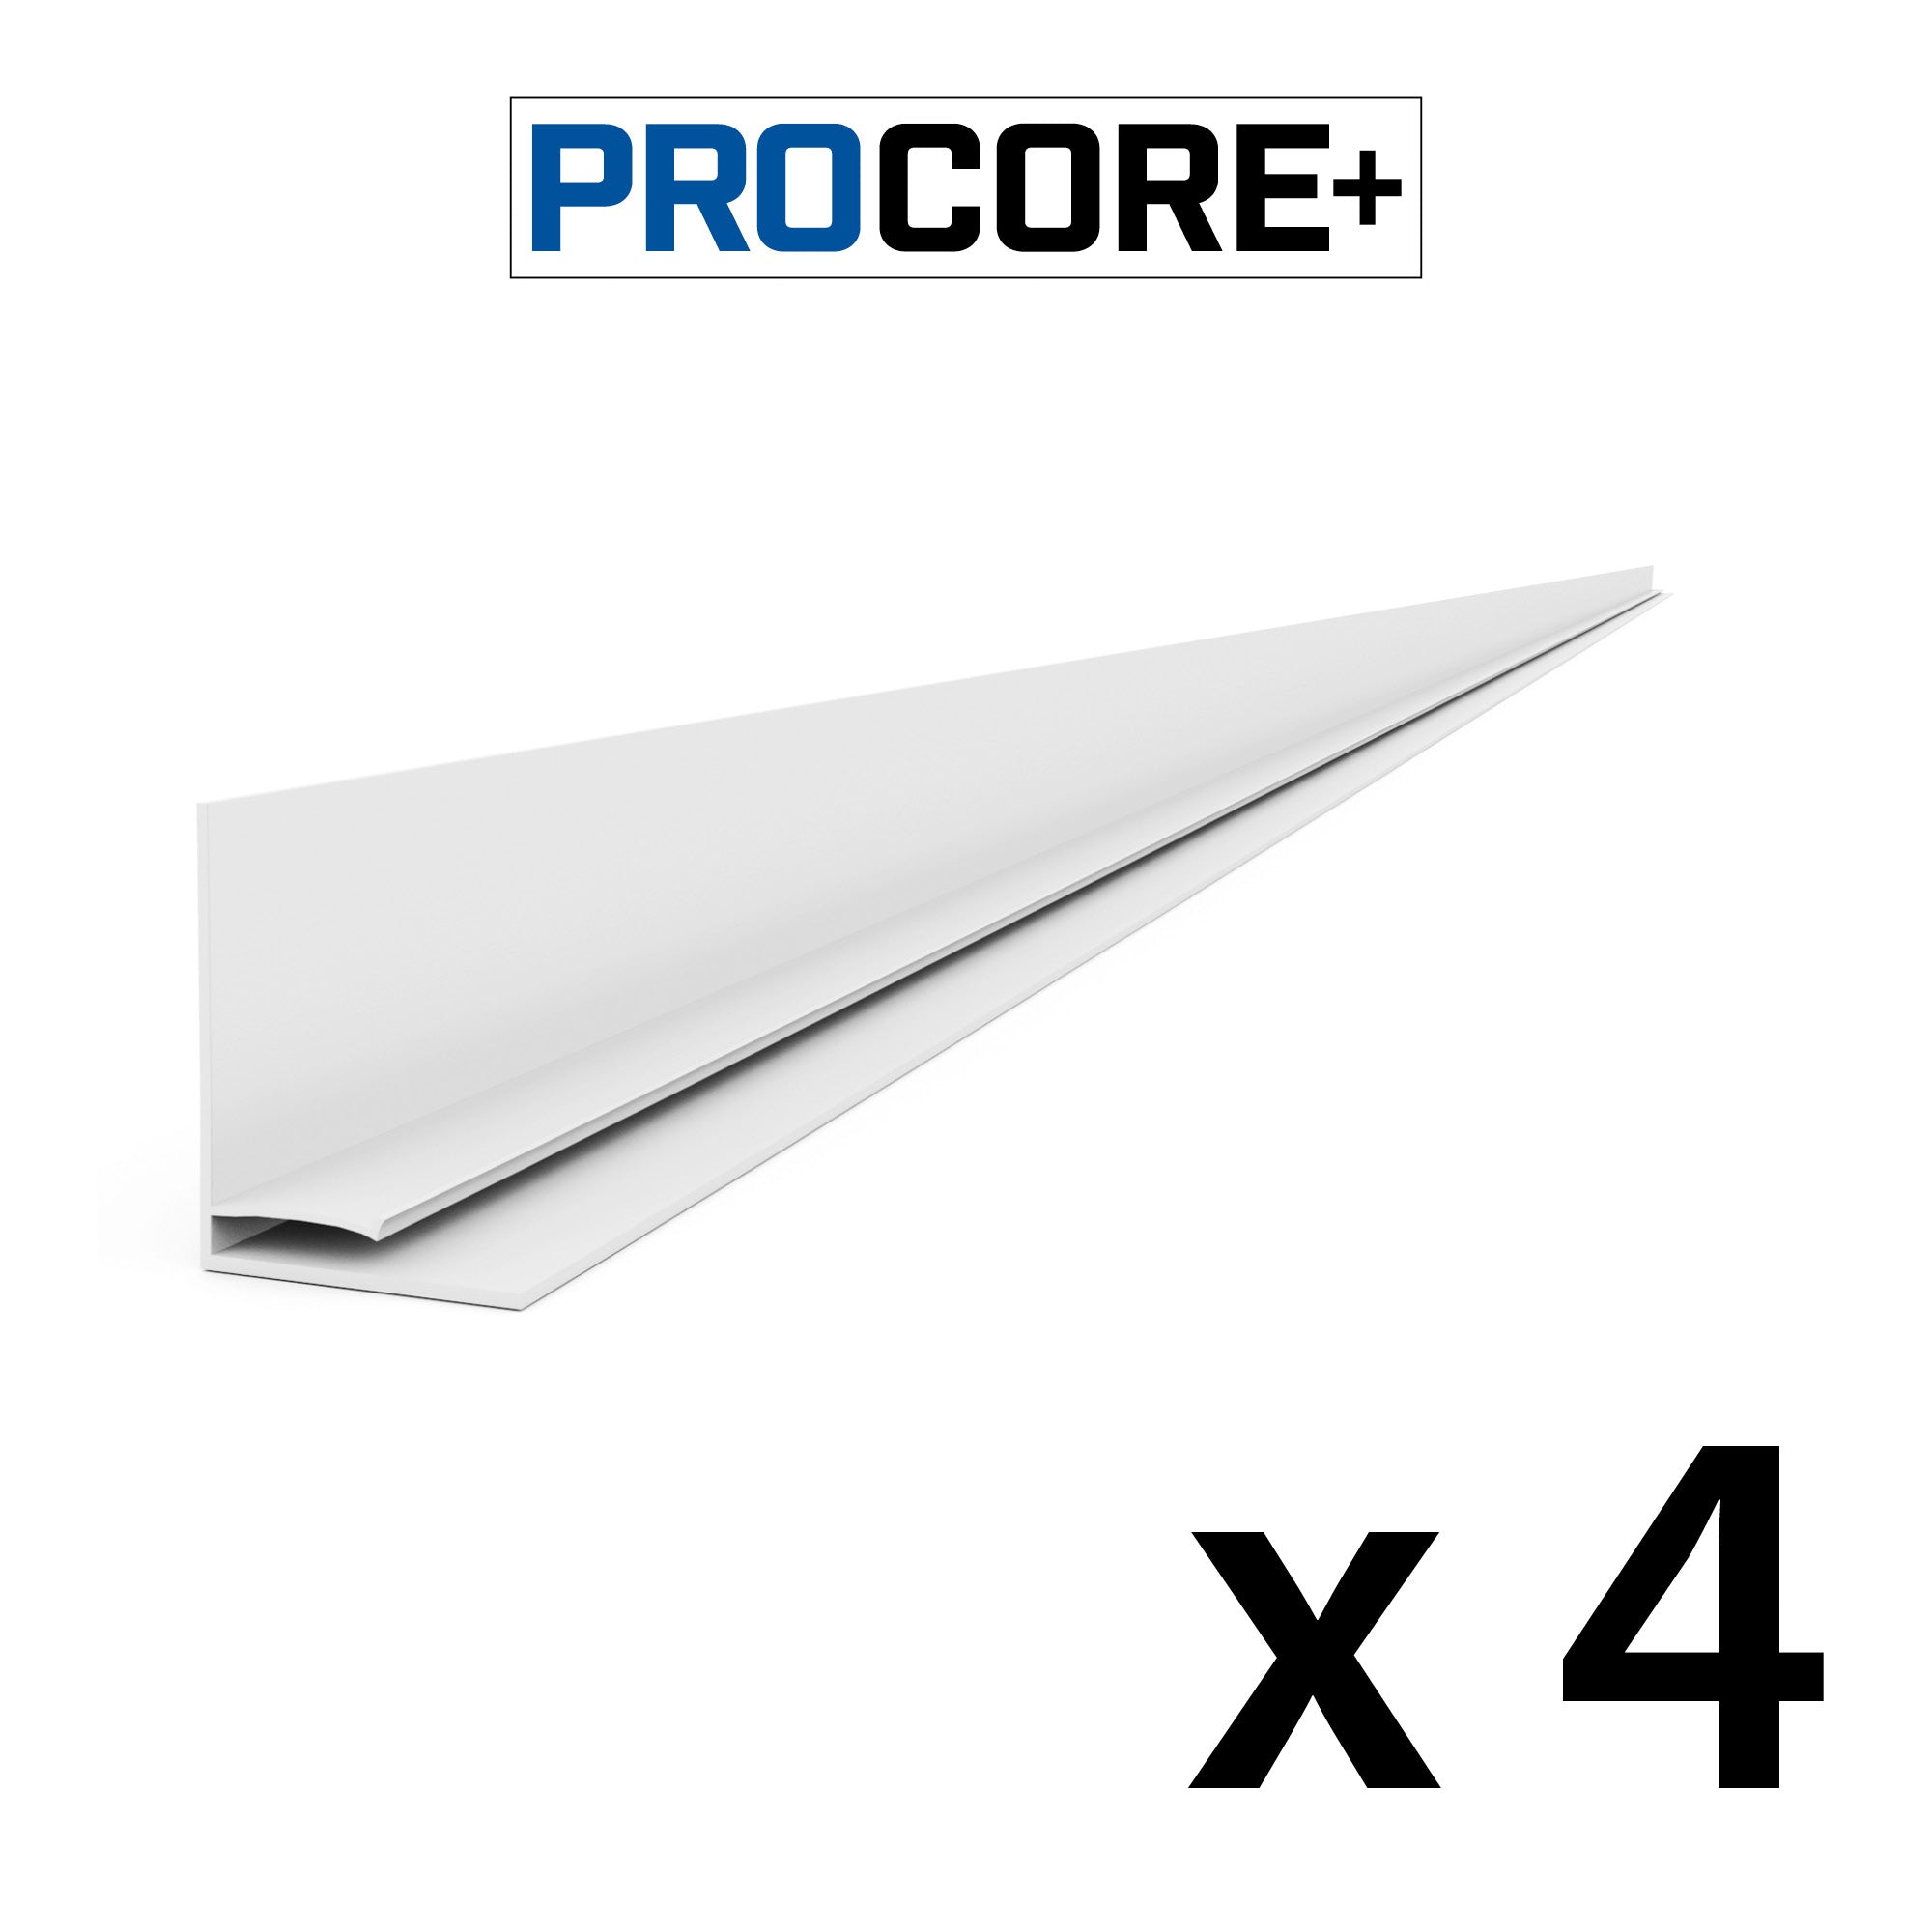 8 ft. PROCORE+ Black carbon fiber  PVC Top Trim Pack